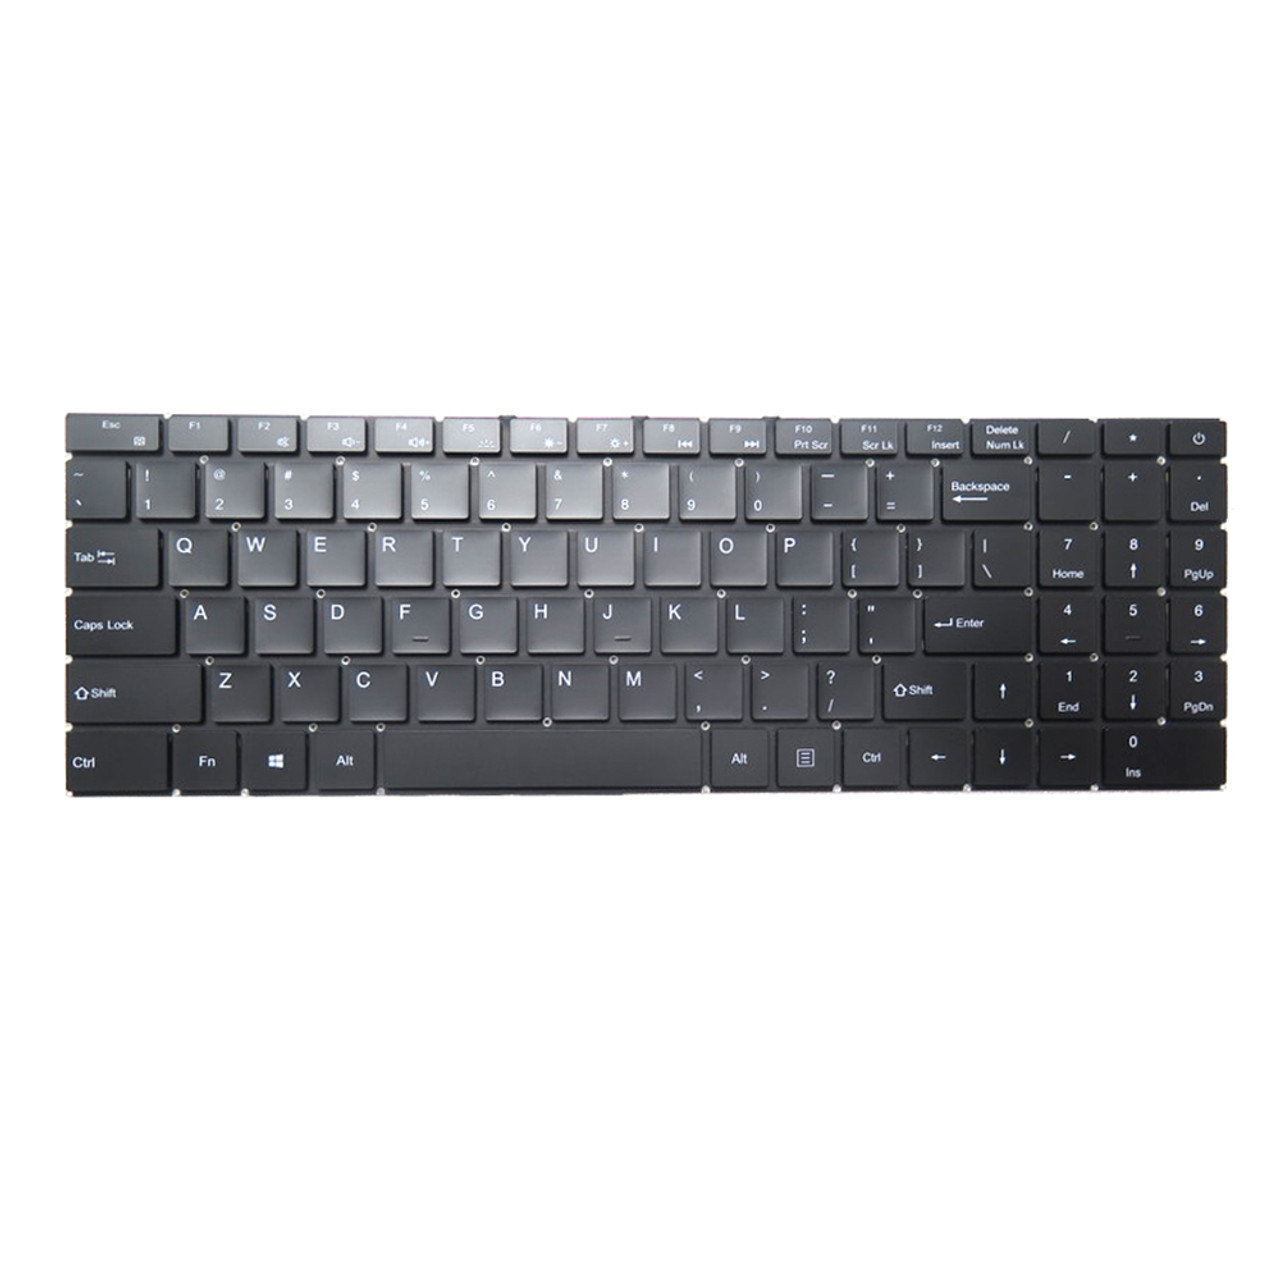 Laptop Keyboard XK-HS372 MB3301028 F0007-028 English US Black Without ...